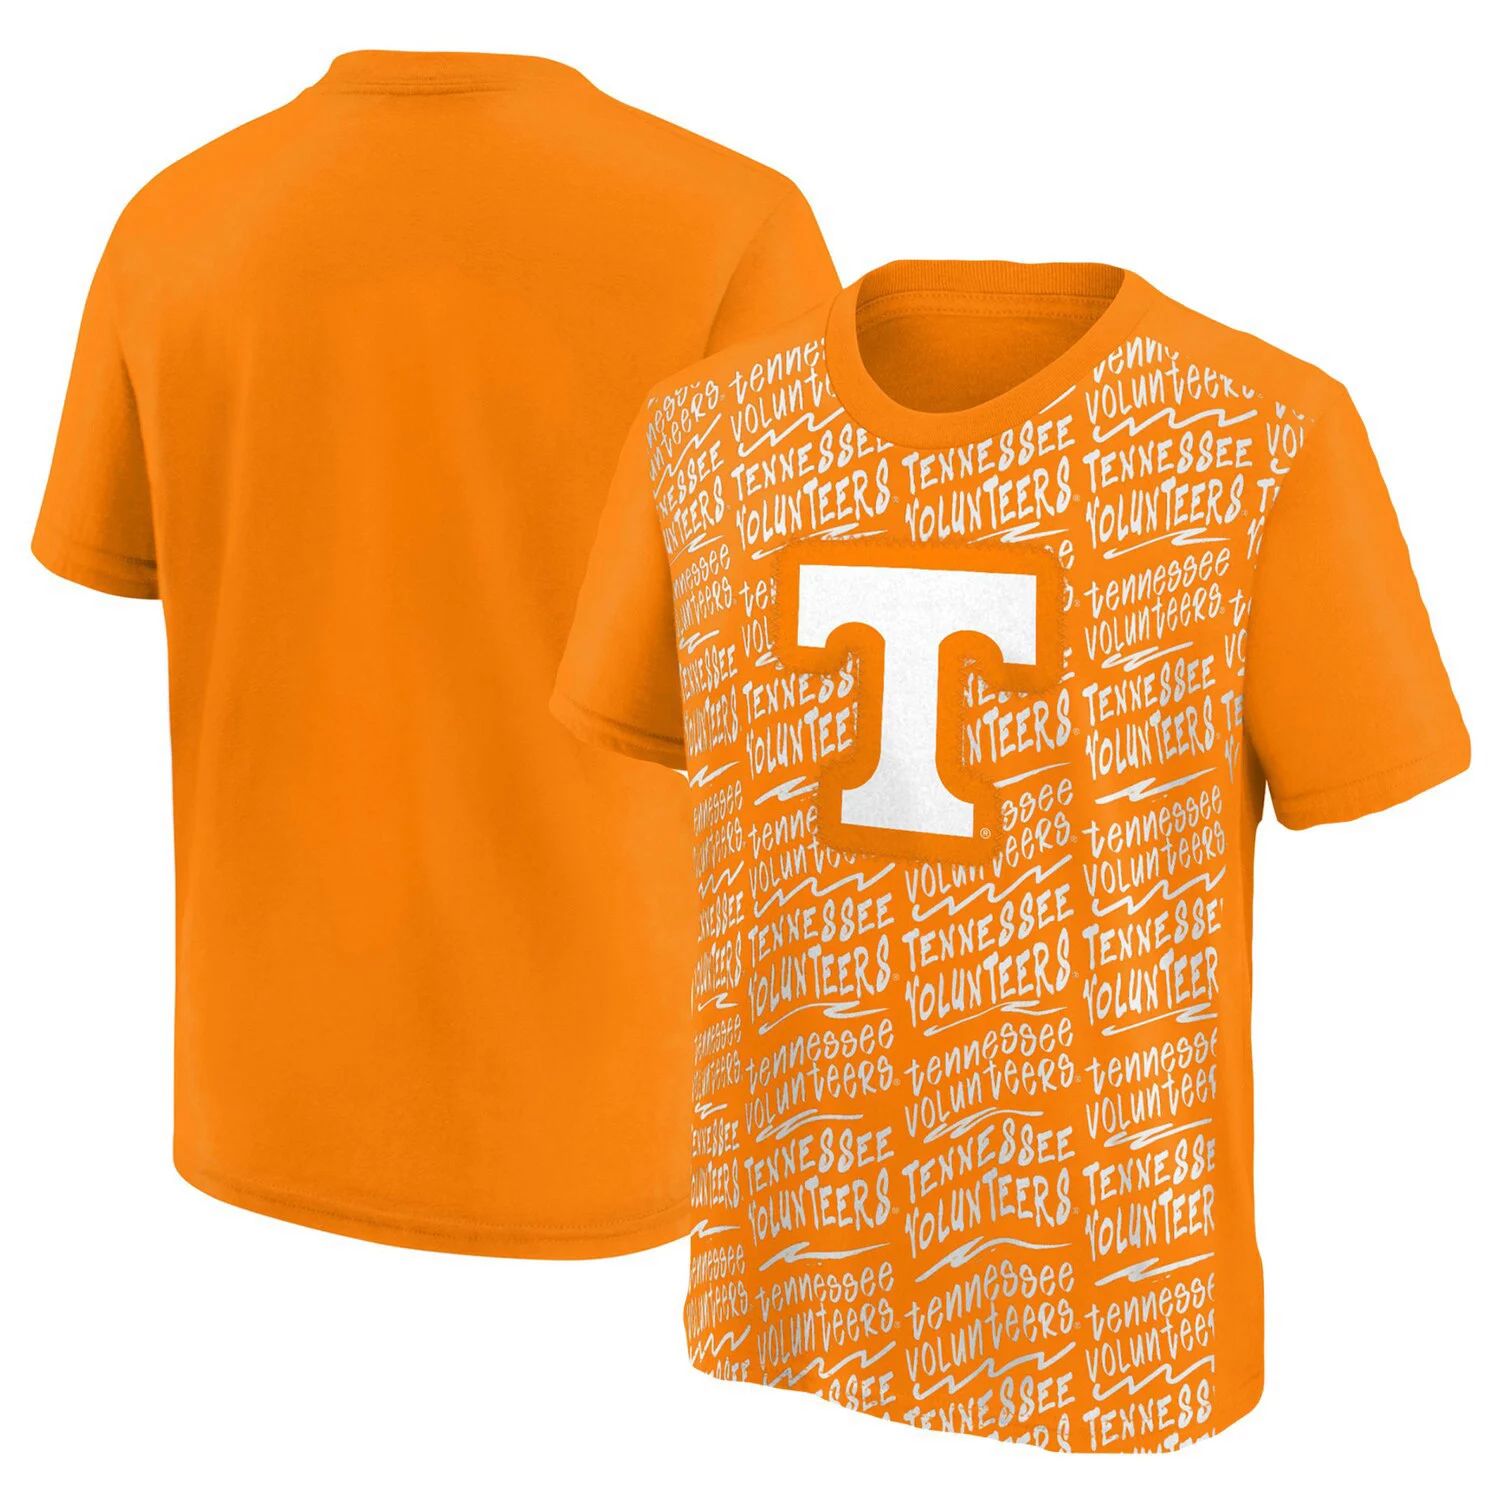 флаг штата теннесси Образцовая футболка молодежного штата Теннесси Оранжевая футболка волонтеров Теннесси Outerstuff